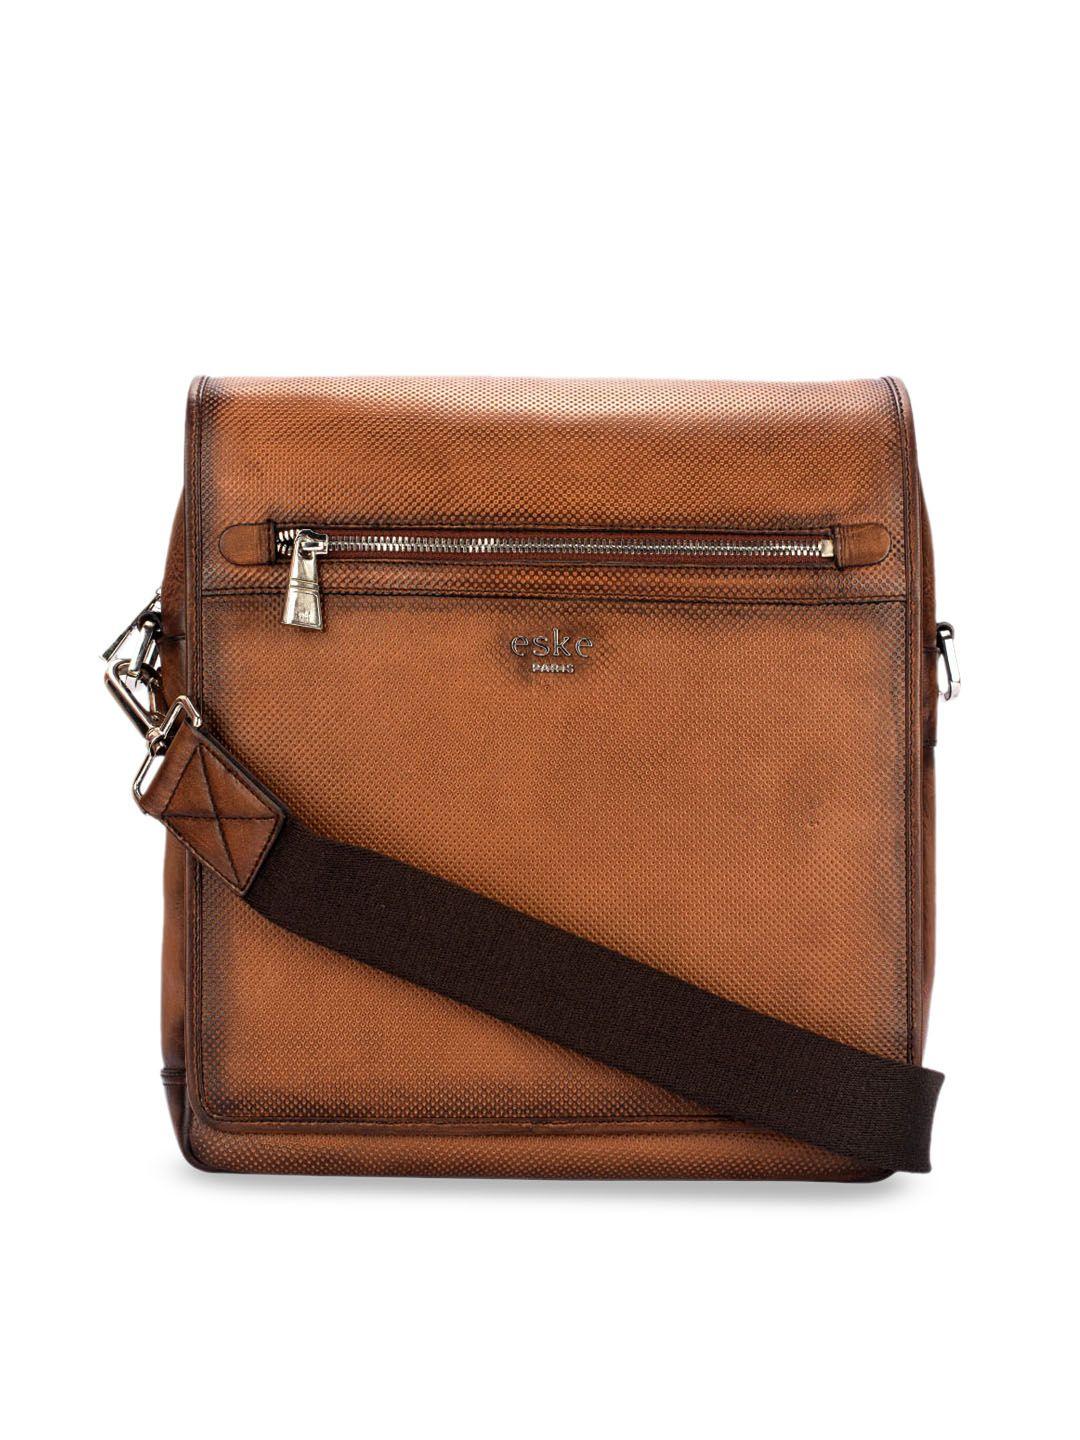 eske men brown solid leather florence travel bag